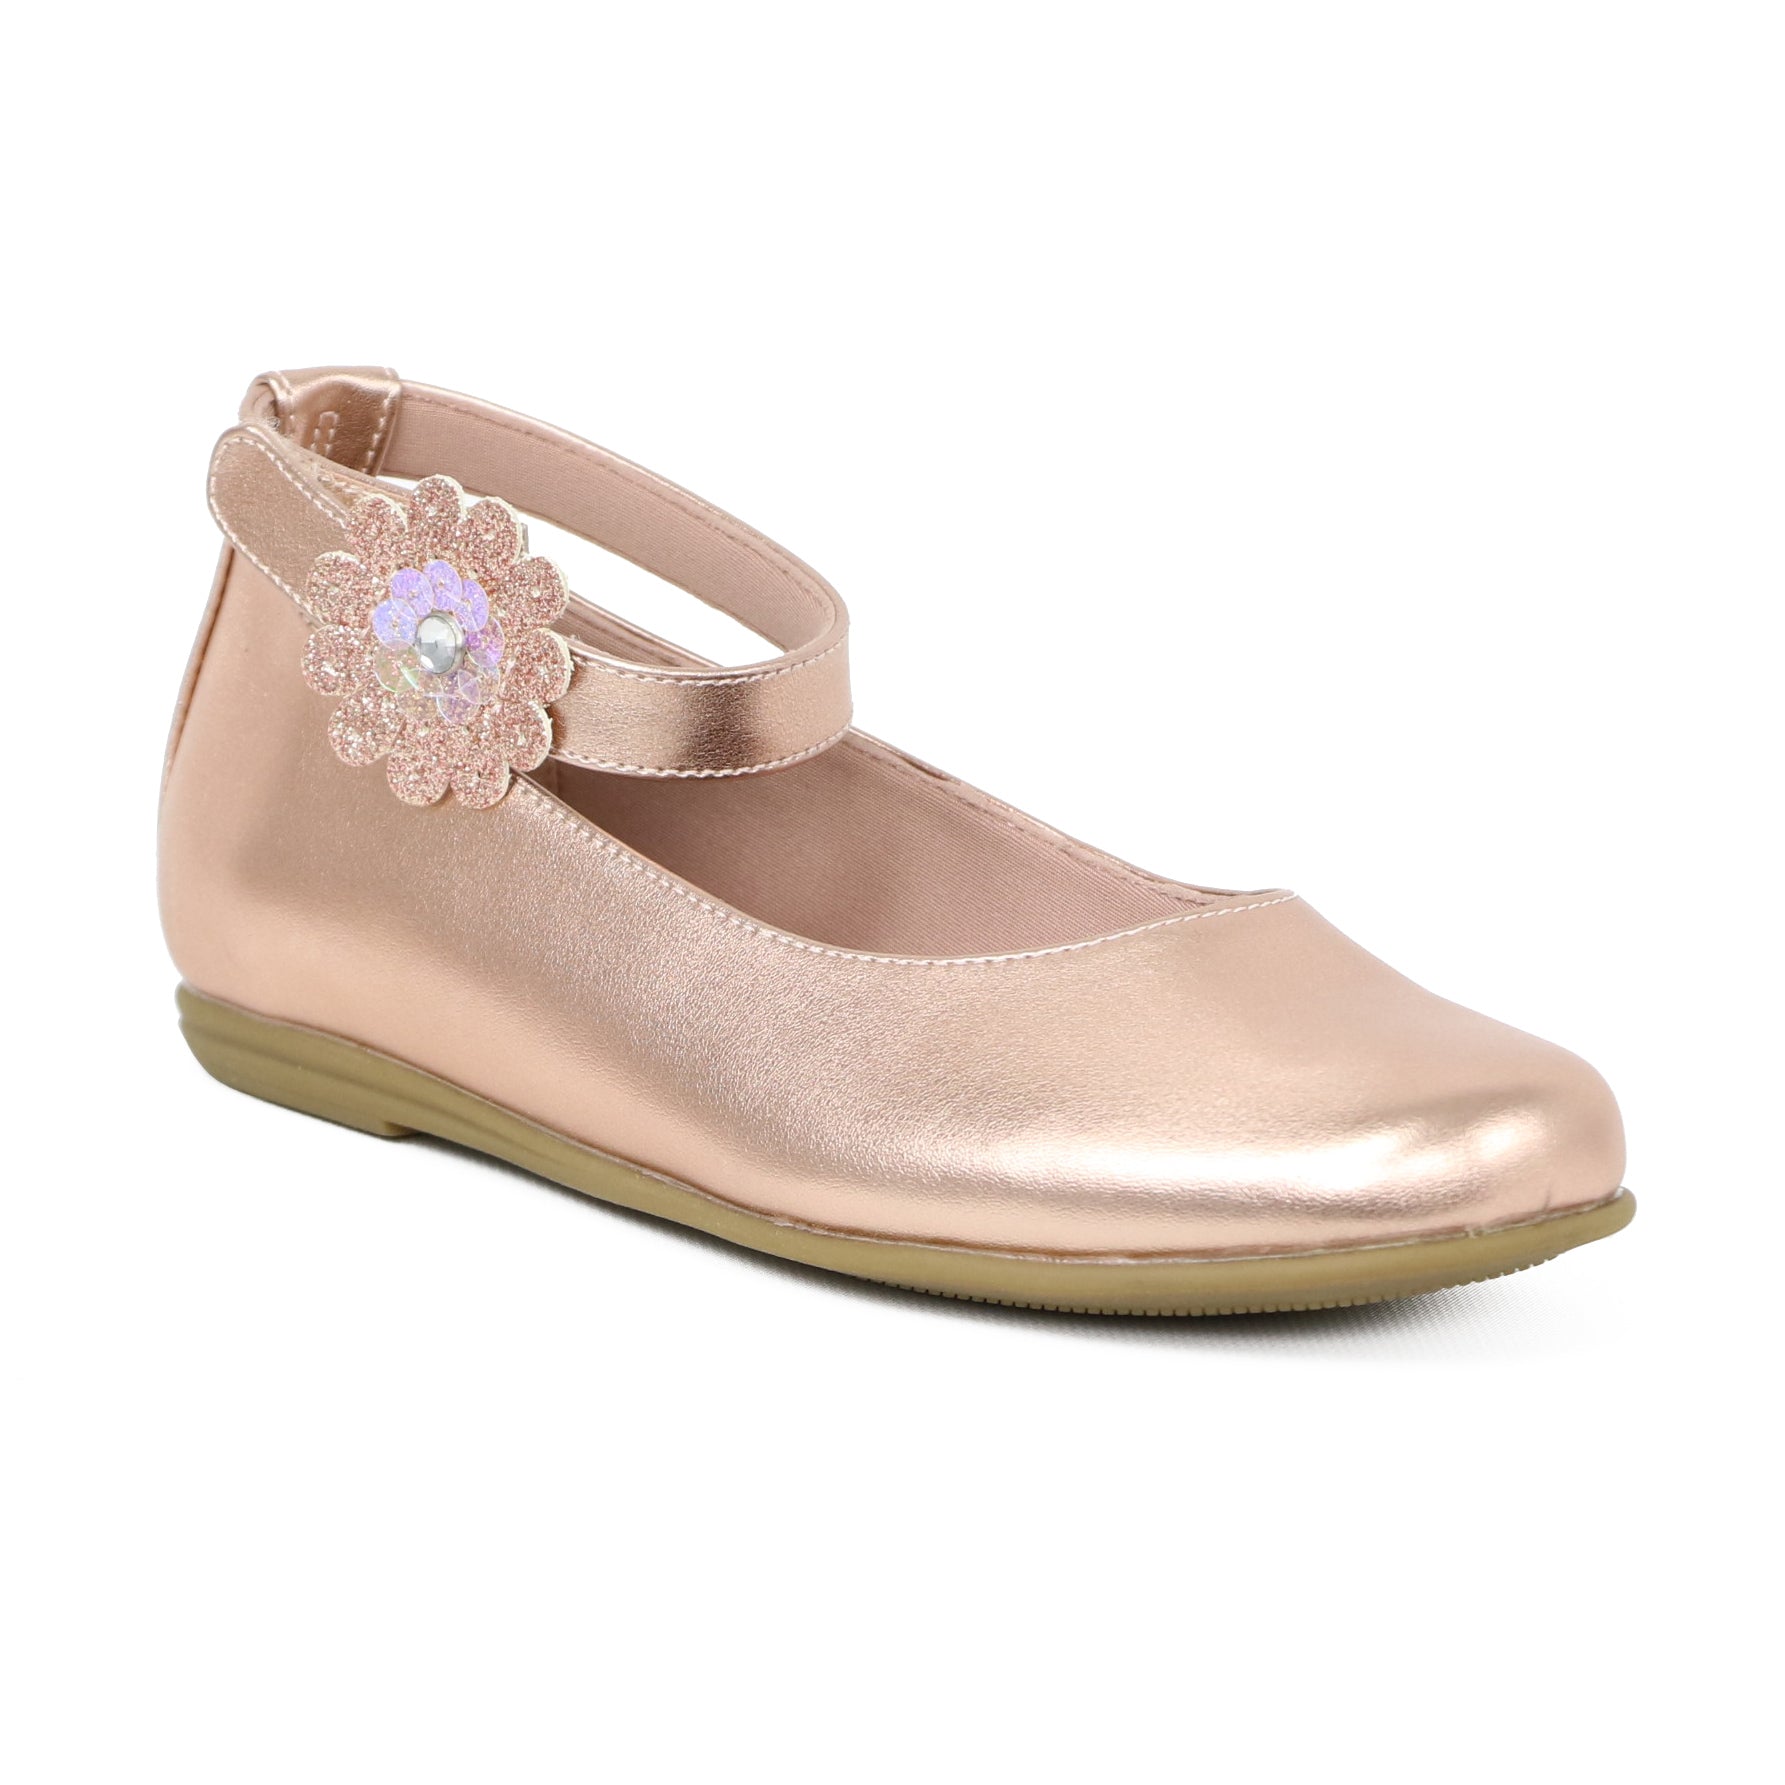 Rachel Shoes Toddler Girls 6-11 Ankle Strap Flower Ballerina Flats